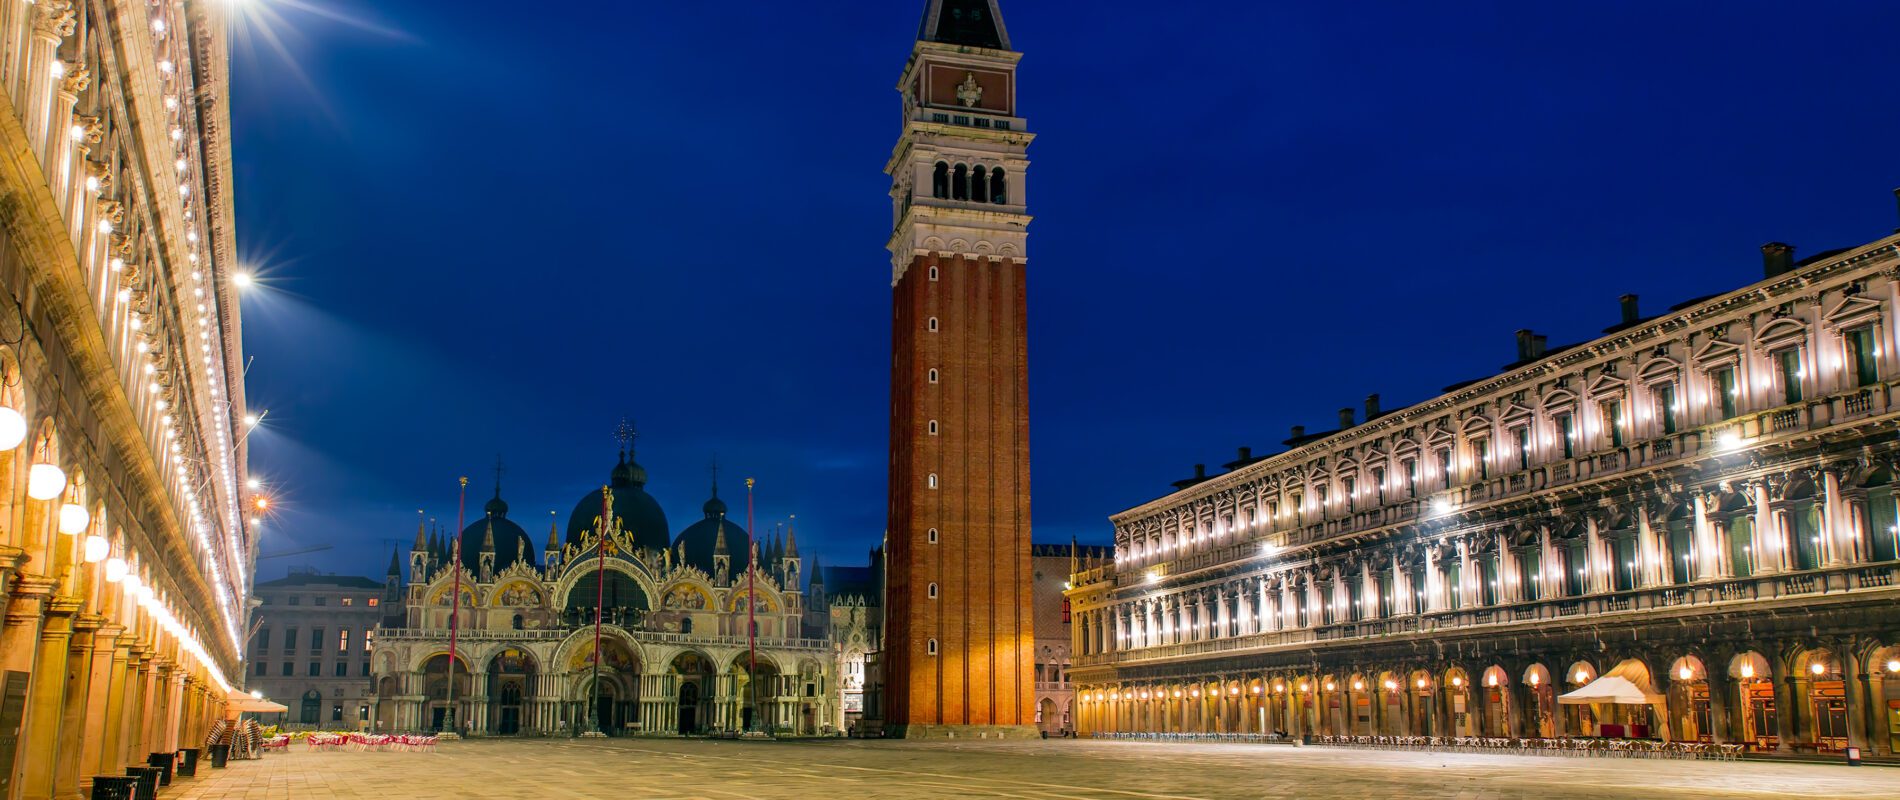 Piazza San Marco - Venezia, notturno dorato